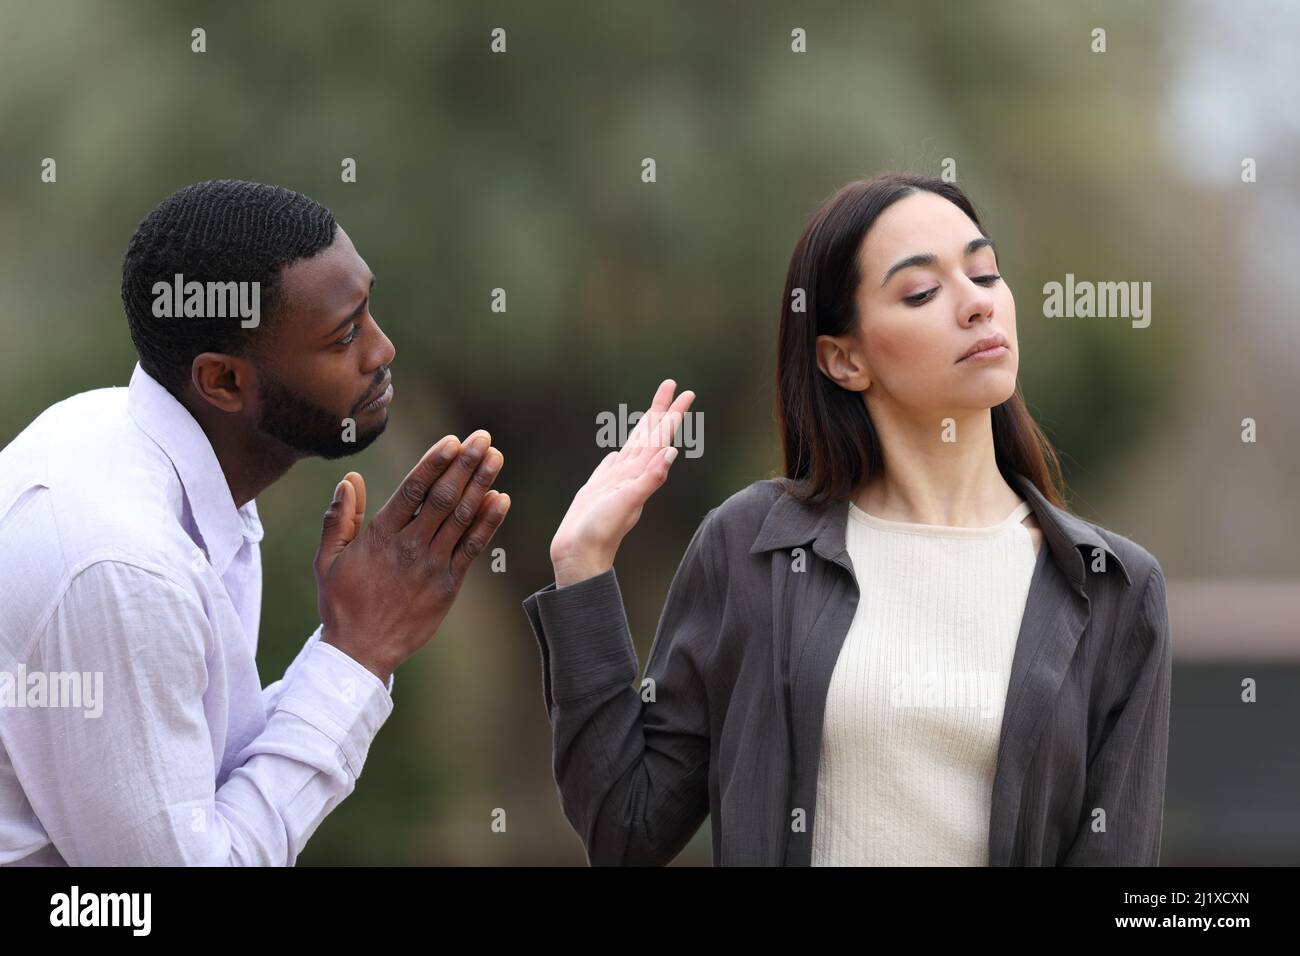 Homme à la peau noire mendiant pardonner et femme caucasienne le rejetant dans un parc Banque D'Images